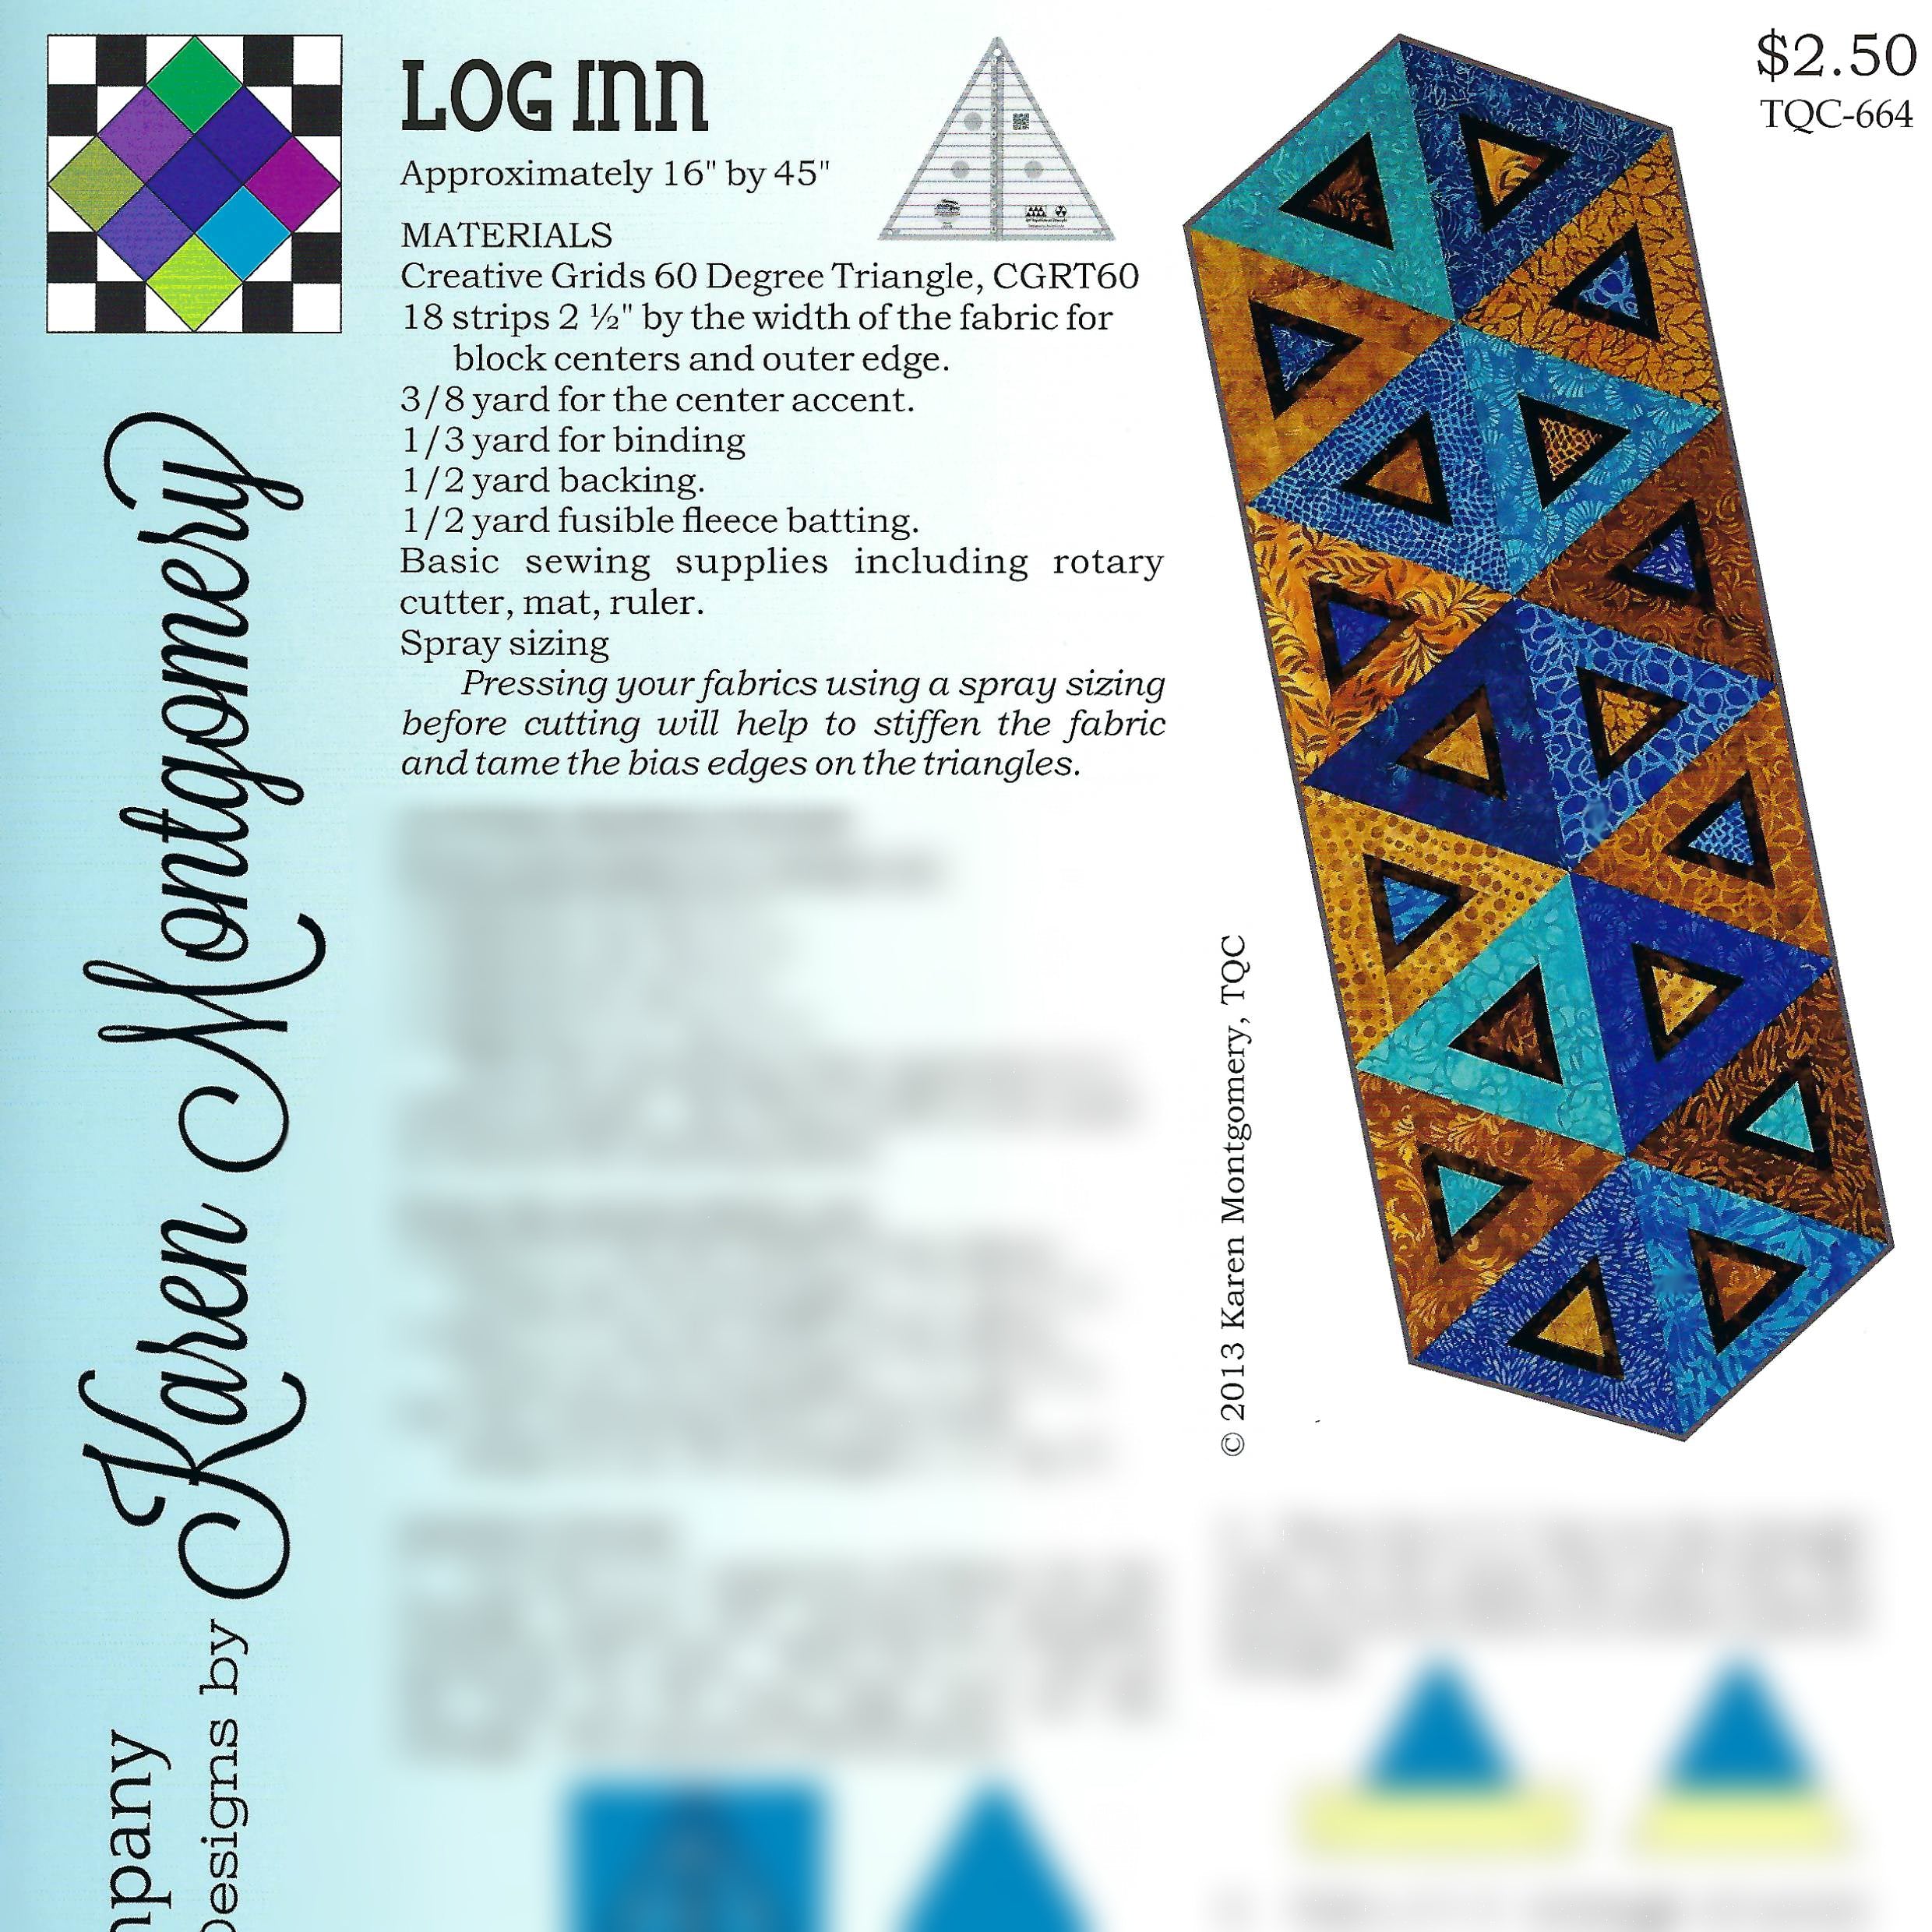 Log Inn Project Sheet